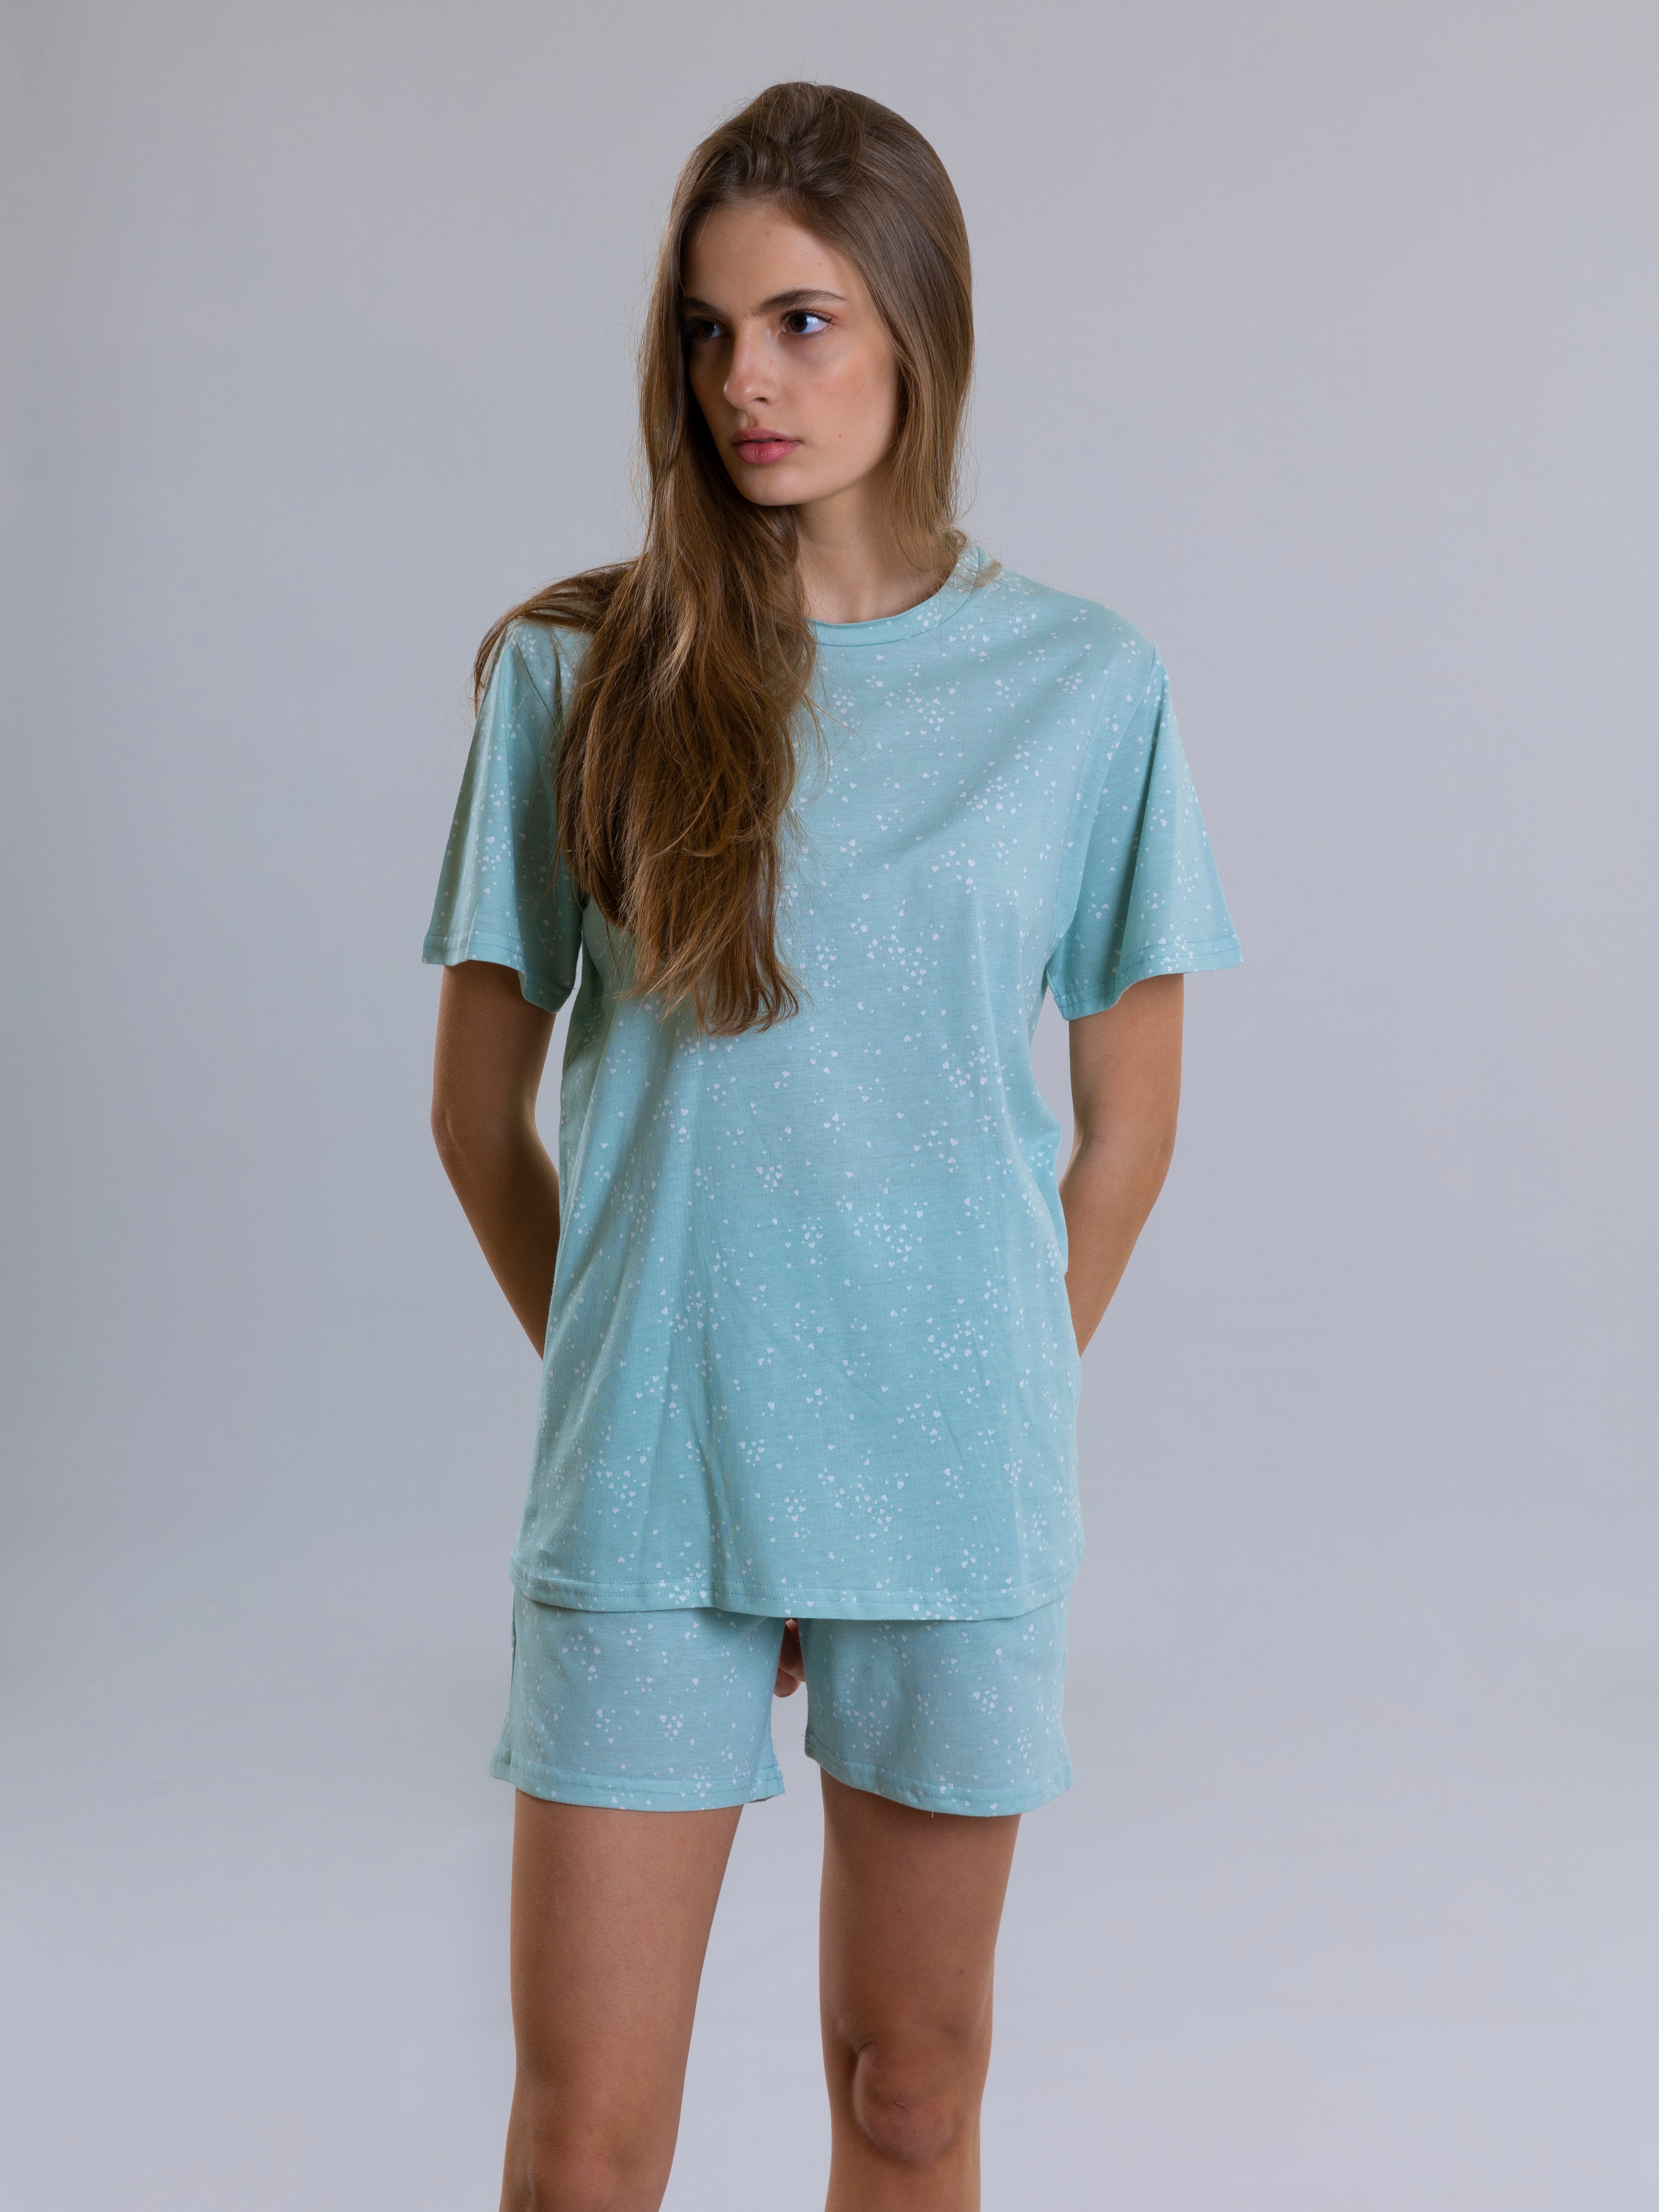 Mini Heart Design Pyjama Set For Women - Aqua